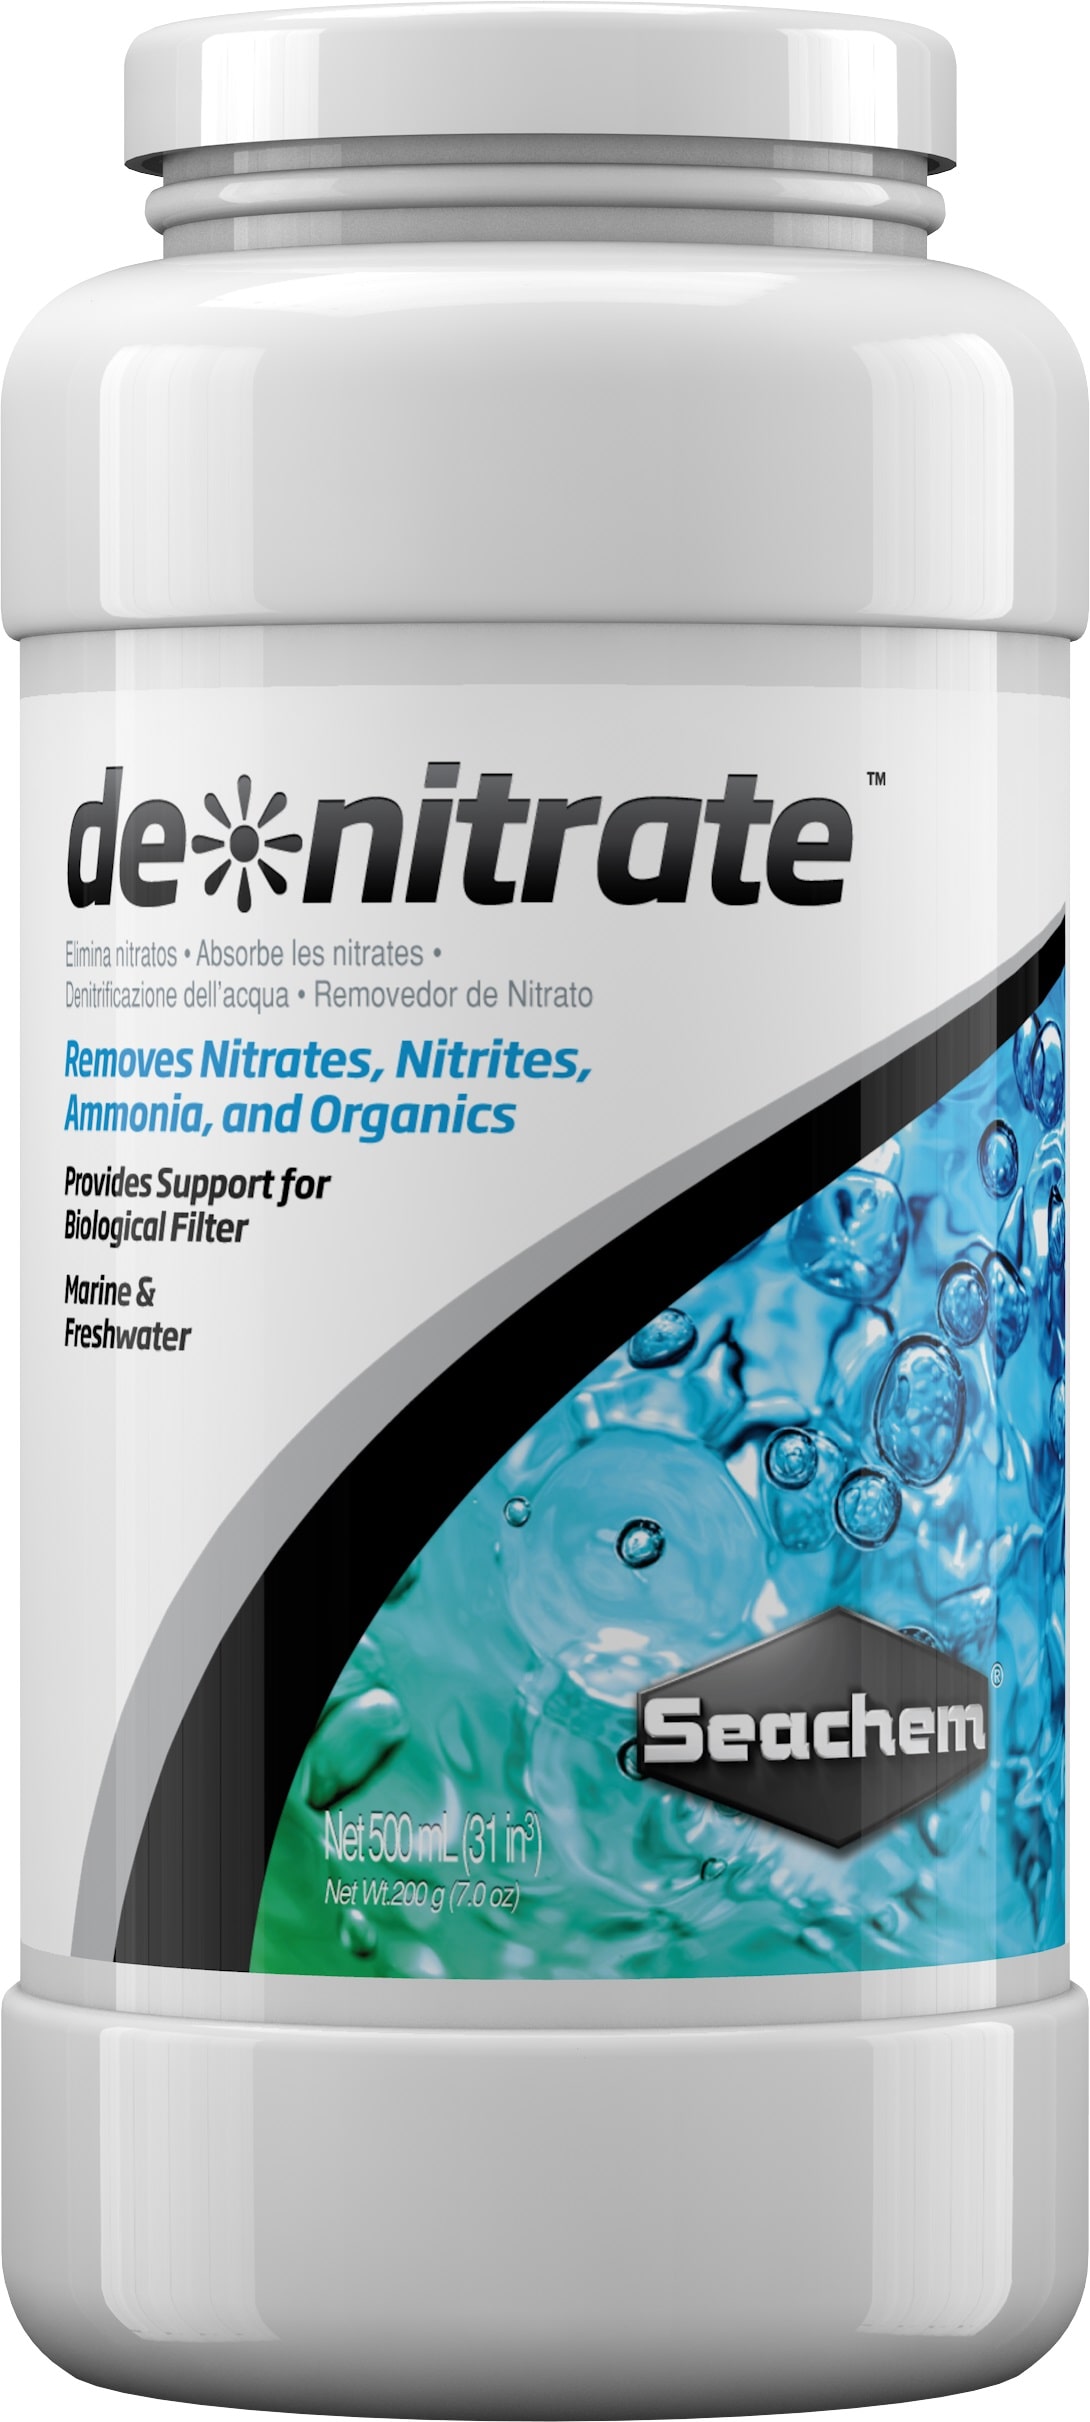 seachem-denitrate-500-ml-materiau-de-filtration-pour-l-elimination-des-nitrates-en-eau-douce-et-en-eau-de-mer-min